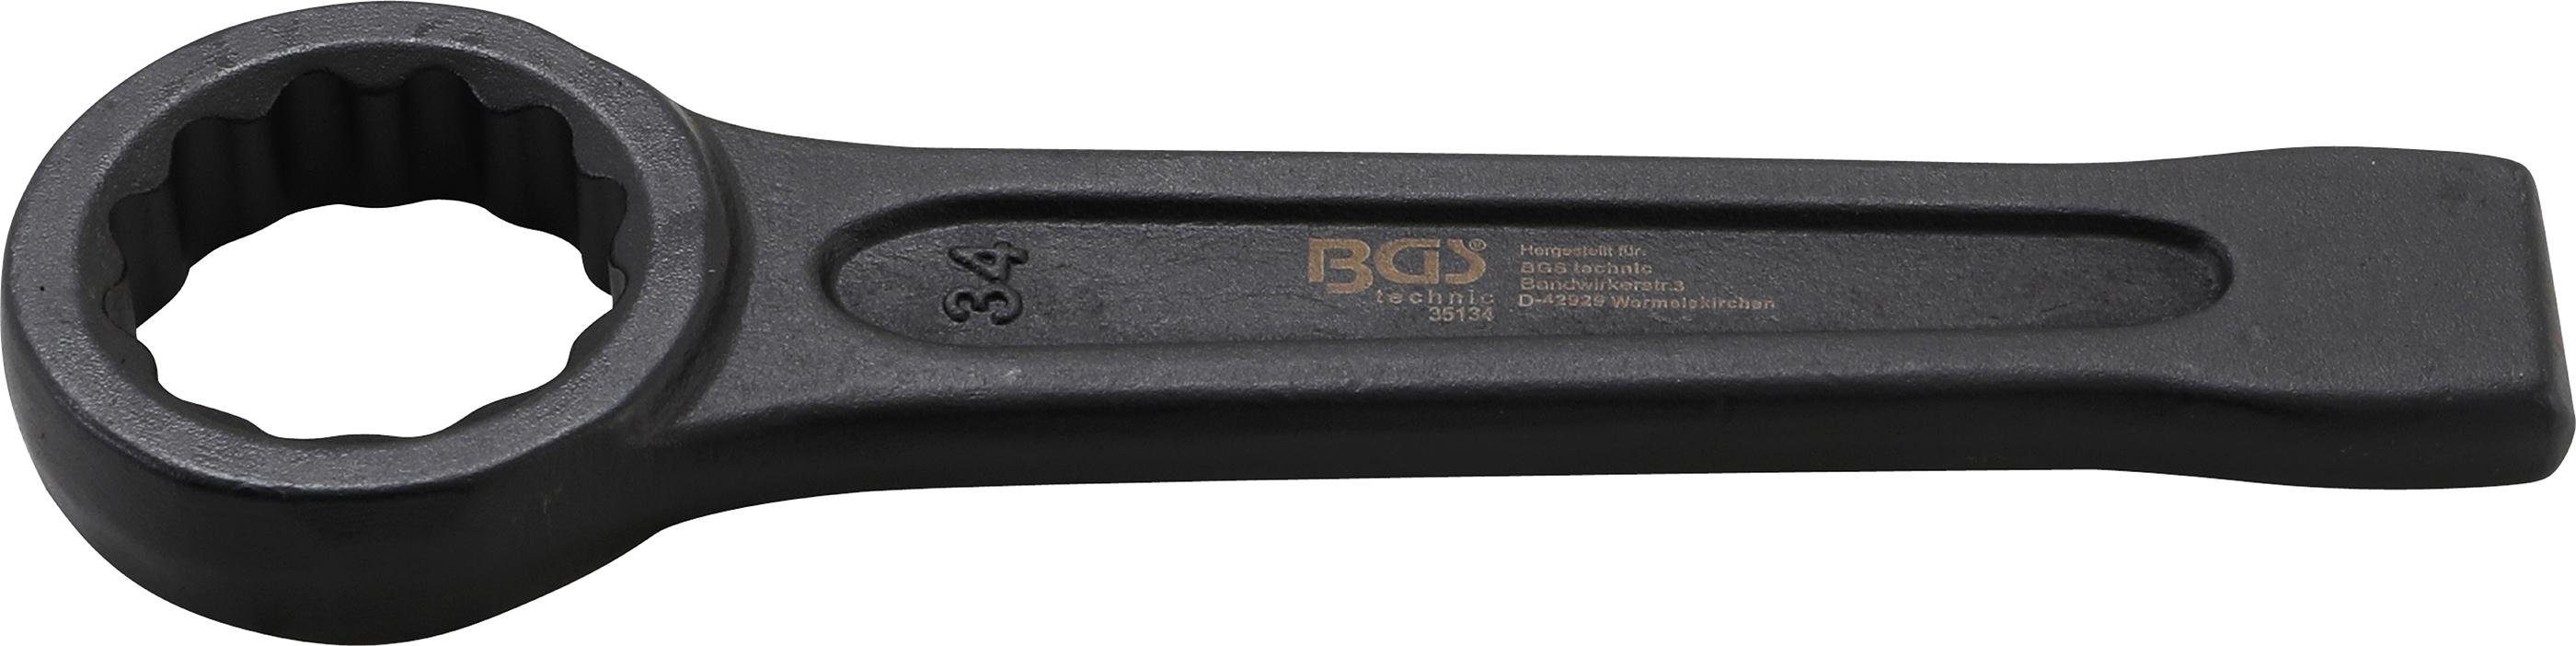 SW BGS Schlag-Ringschlüssel, 34 mm technic Ringschlüssel